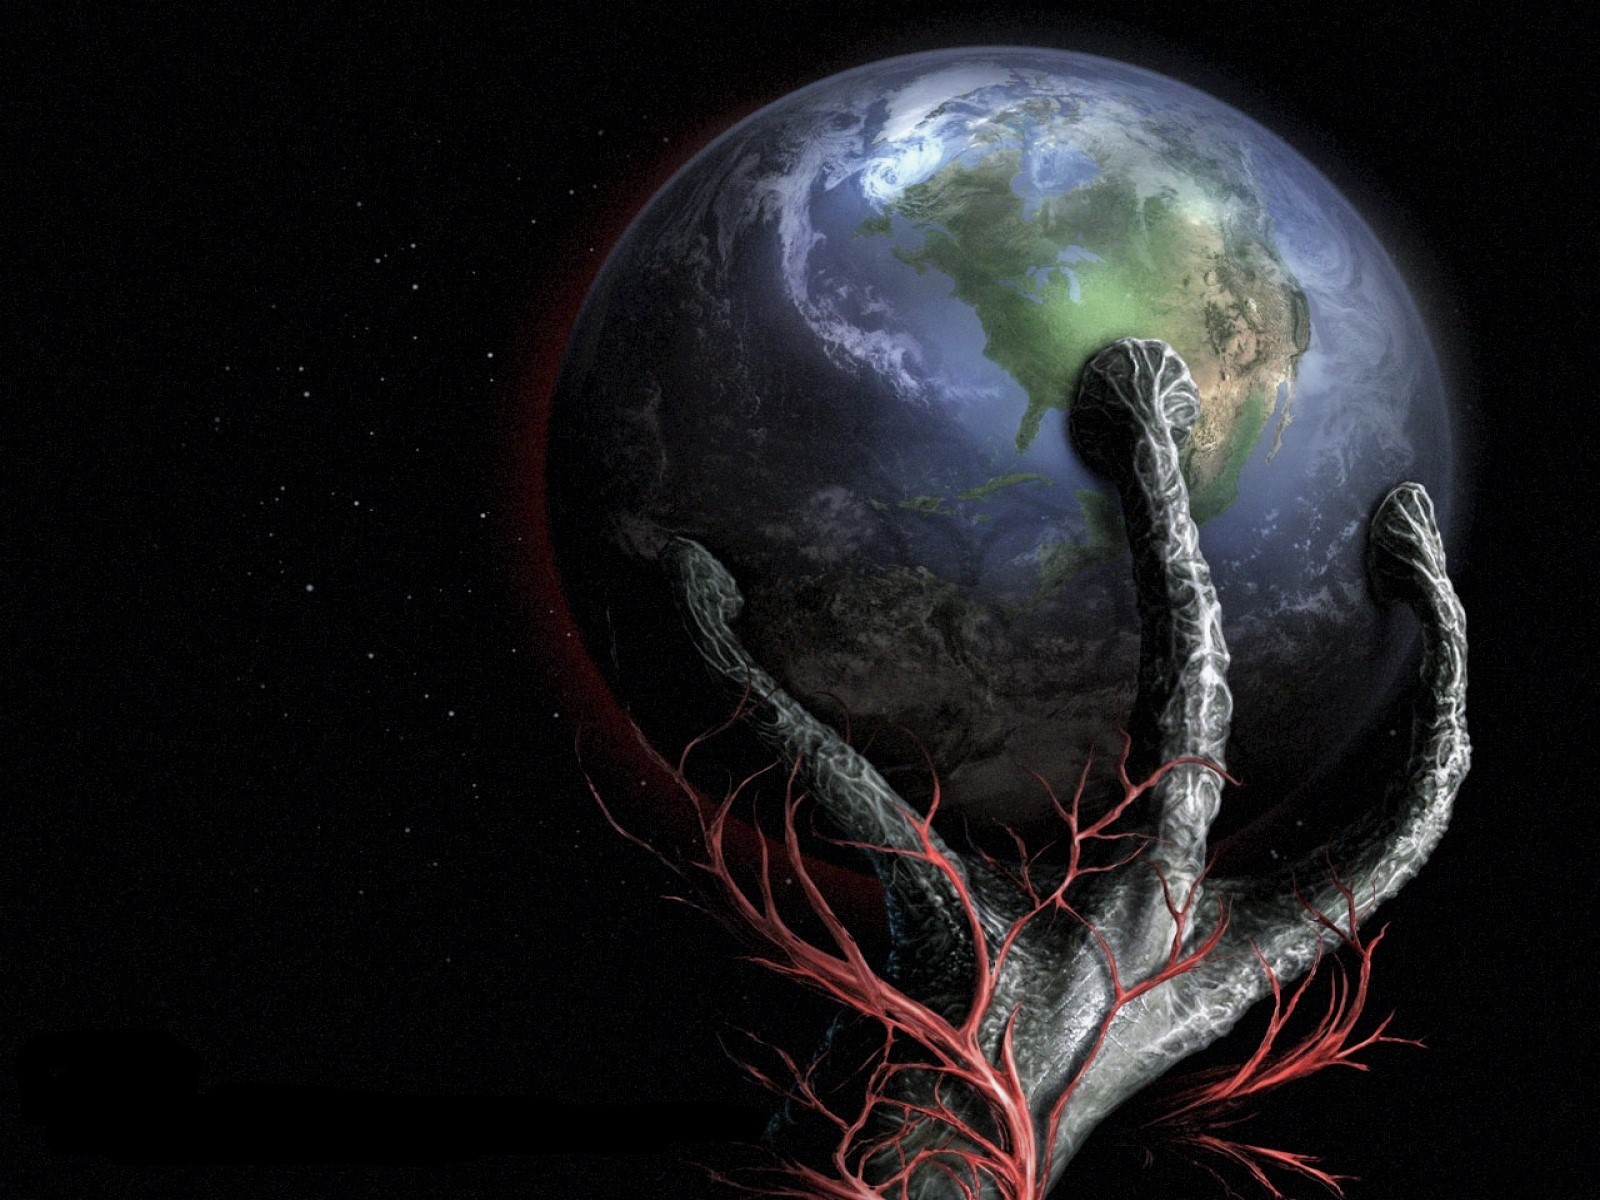 La Tierra: ¿Prisioneros en un planeta de Esclavos, o en un Paraíso dimensional?